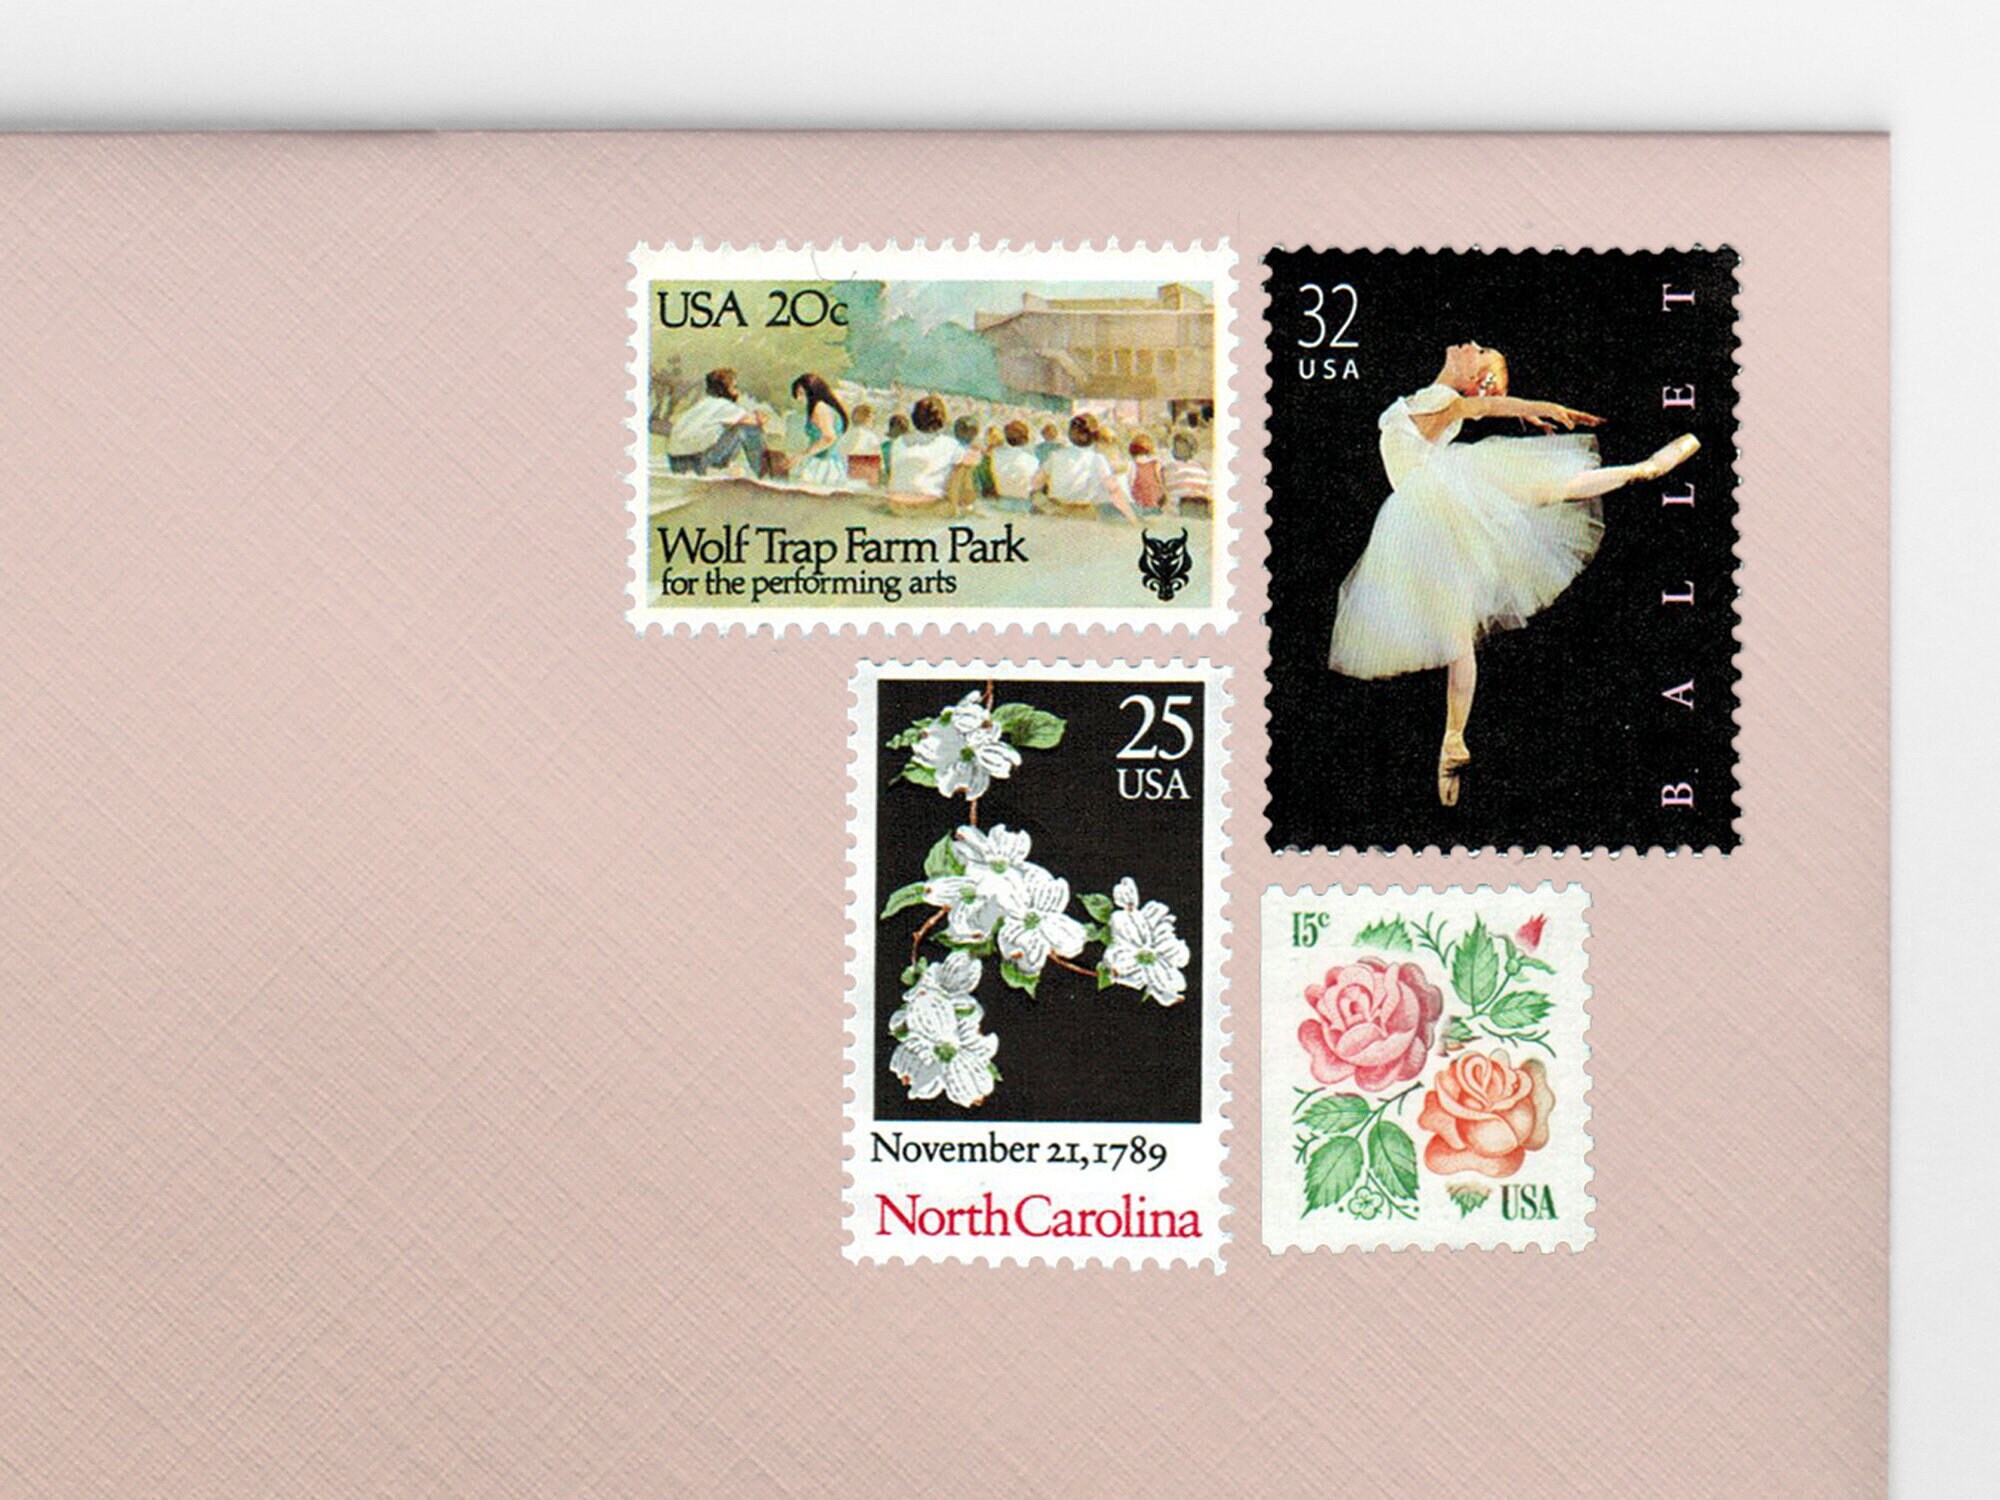 Posts (5) 2 oz wedding invitations - Grace Kelly Blue elegant unused  vintage postage stamp sets